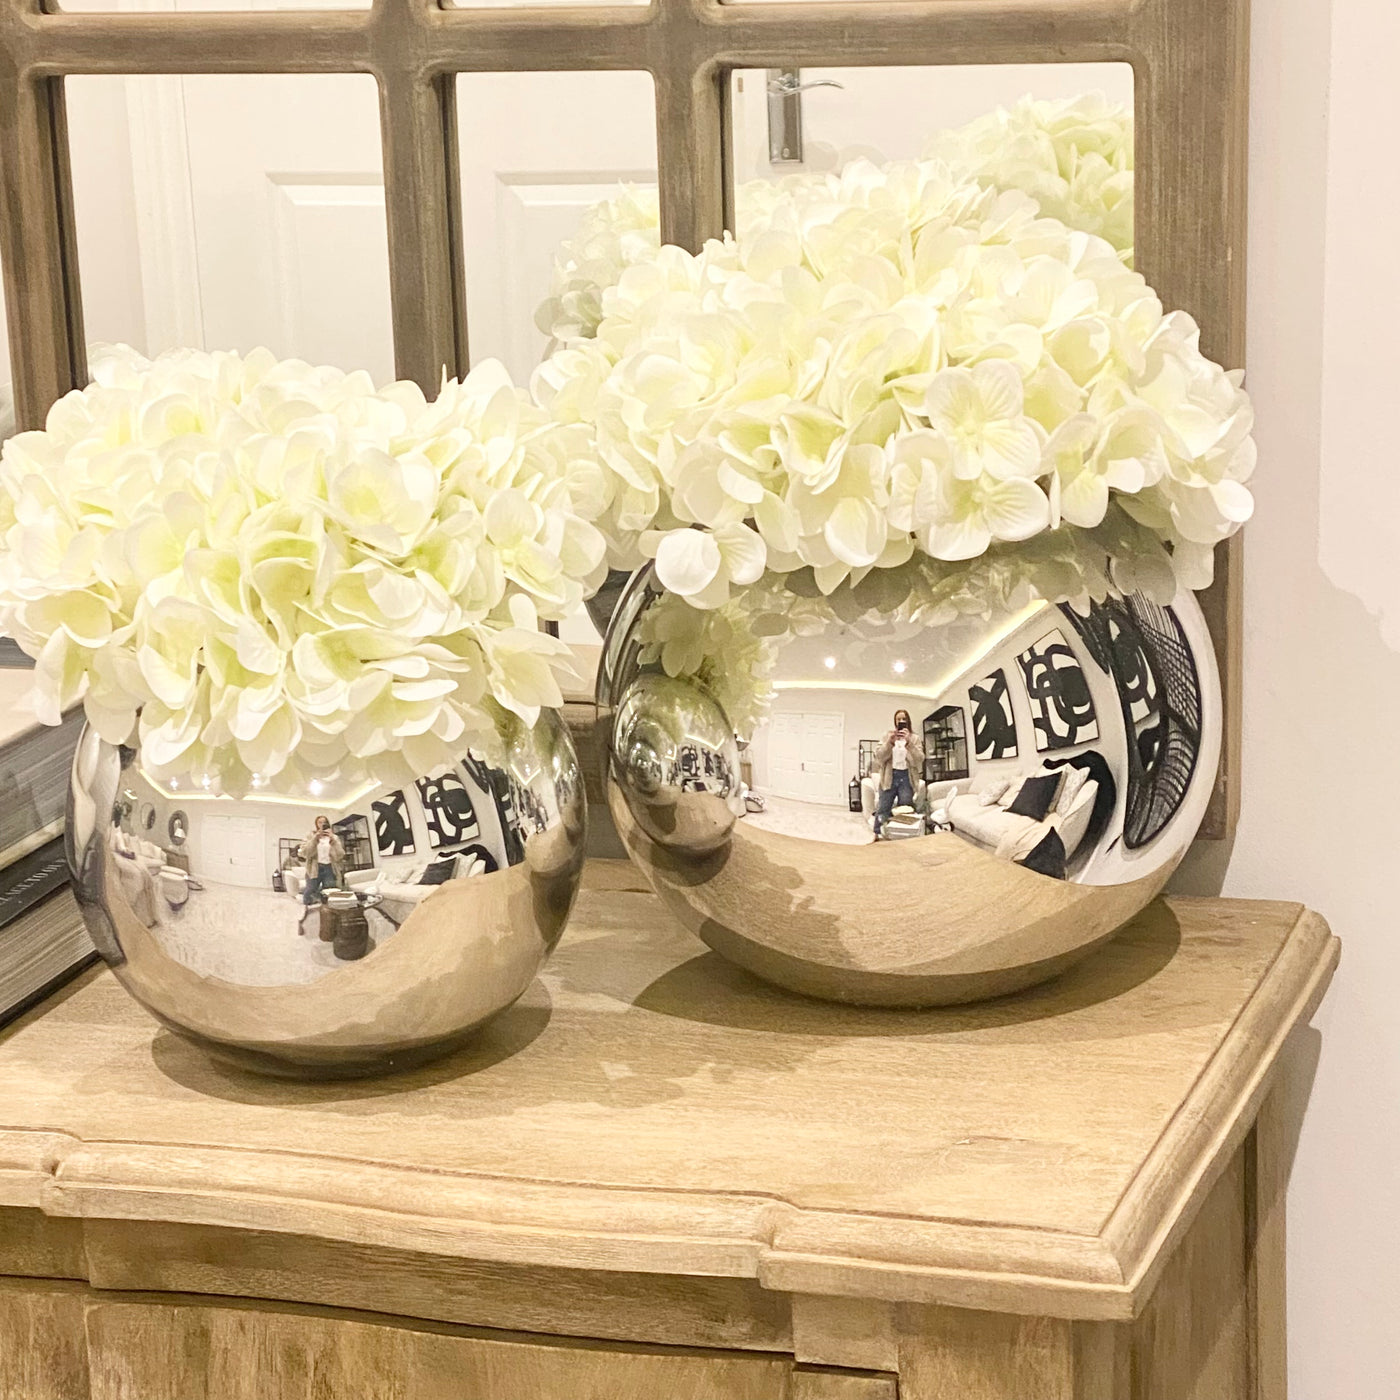 White Hydrangeas in Mirrored Fishbowl Vase